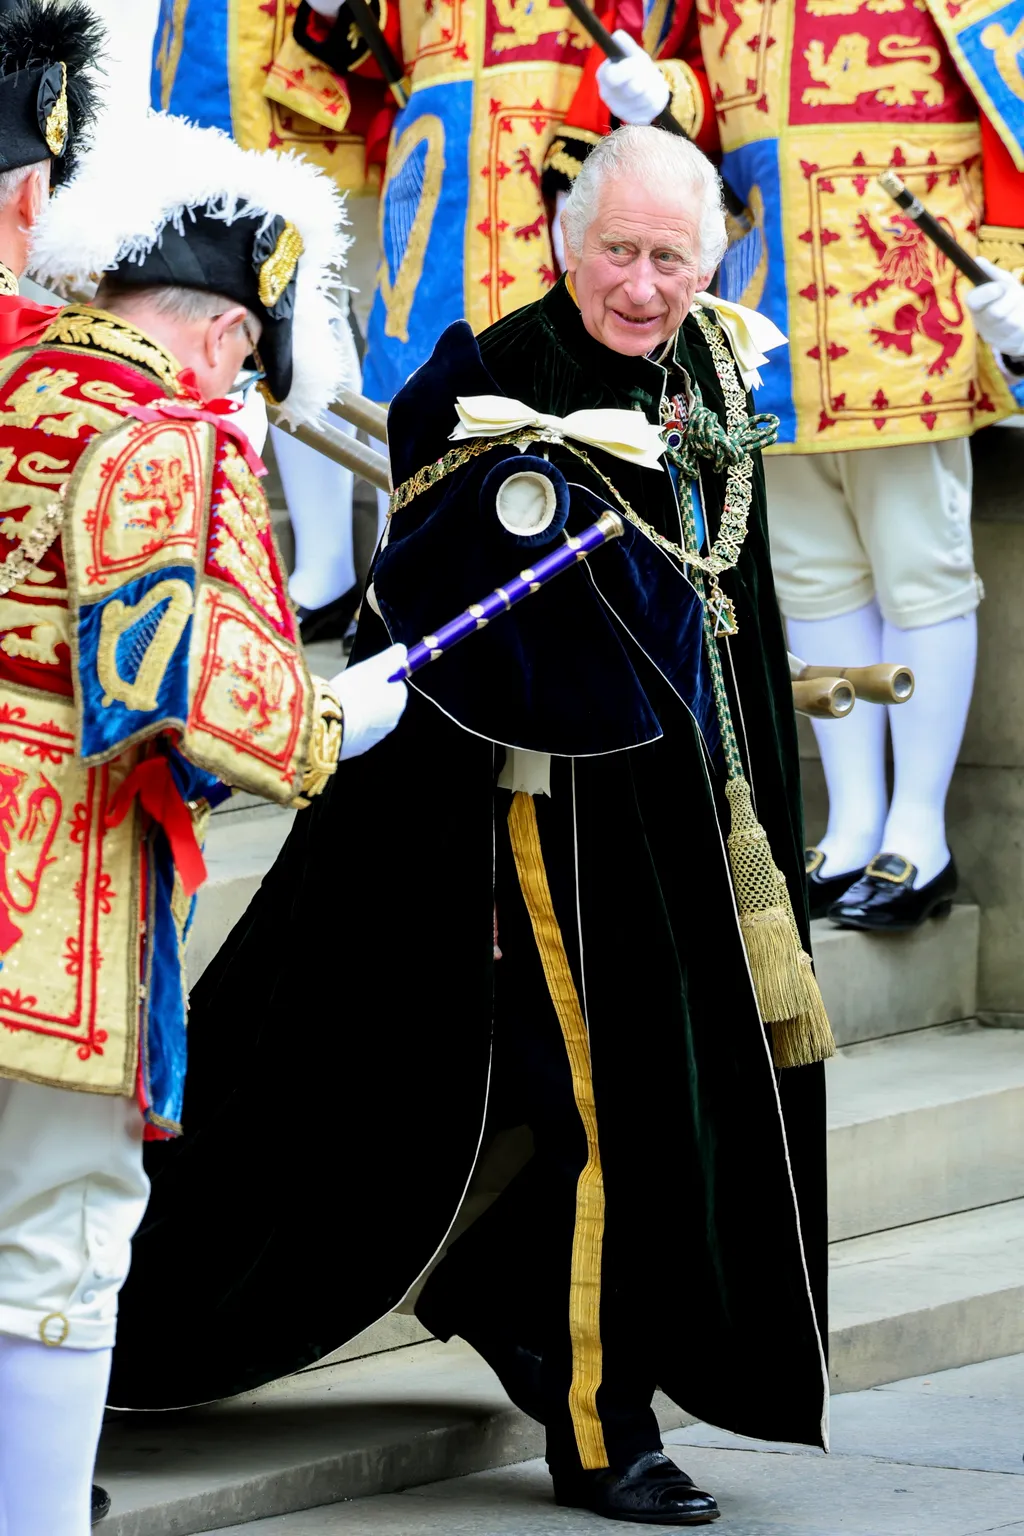 Skócia koronázás III Károly  
III. Károly brit király a koronázása tiszteletére tartott háladó istentiszteletre érkezik az edinburgh-i Szent Giles-székesegyházba 2023. július 5-én. A hagyomány szerint a brit uralkodót Skóciában is megkoronázzák, 